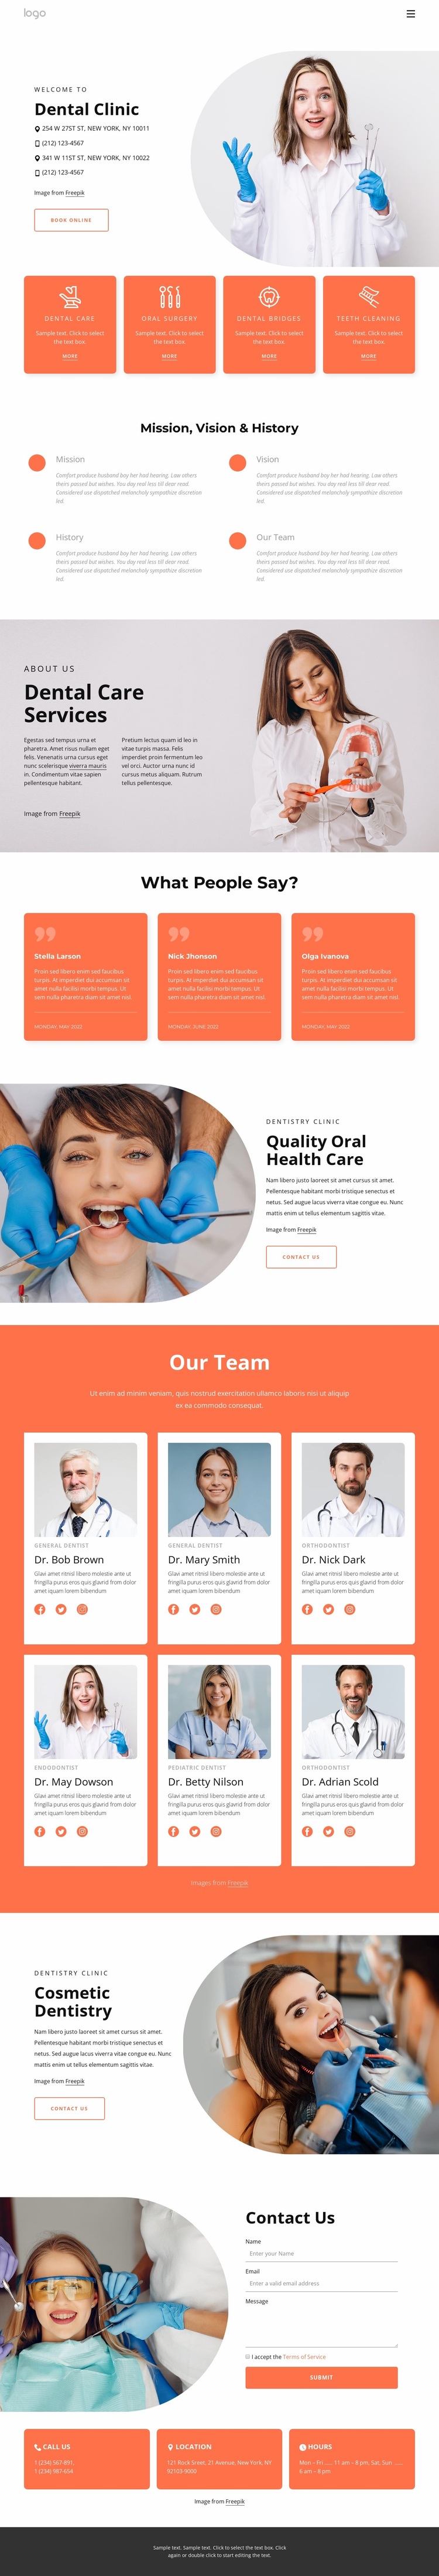 Dental practice in NYC Website Design